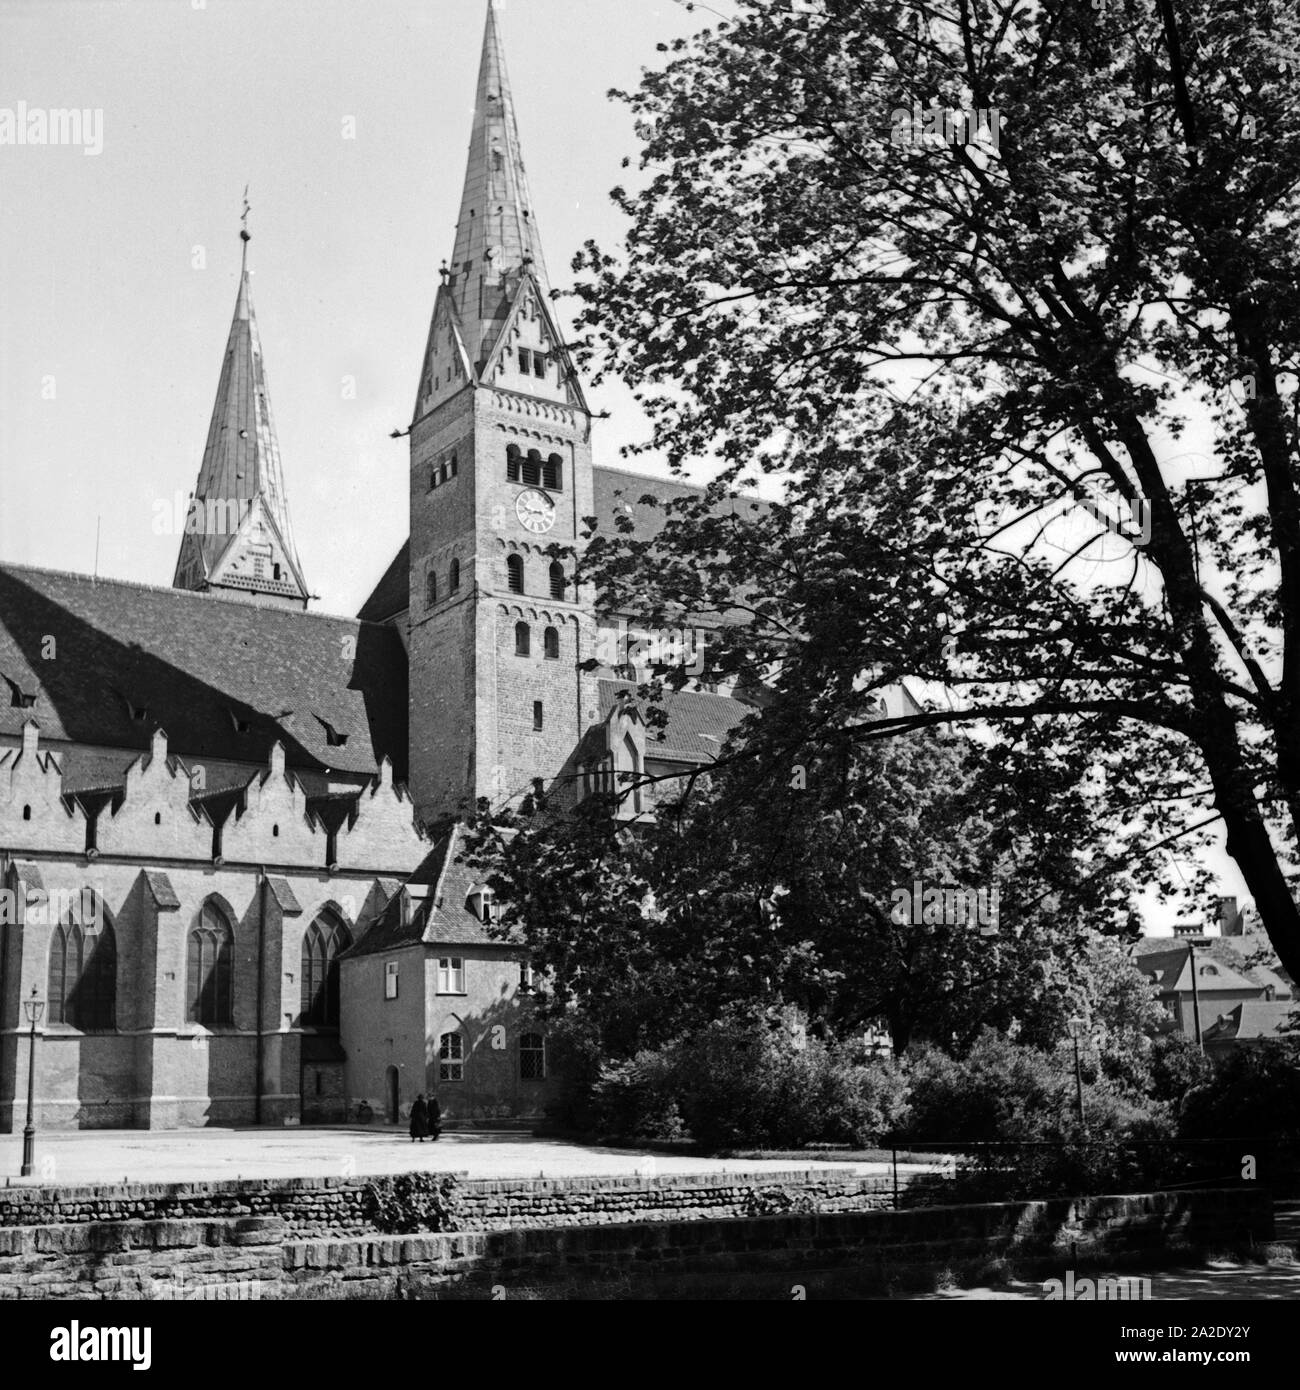 Der Hohe Dom zu Augsburg, Deutschland 1930er Jahre. Augsburg cathedral, Germany 1930s. Stock Photo